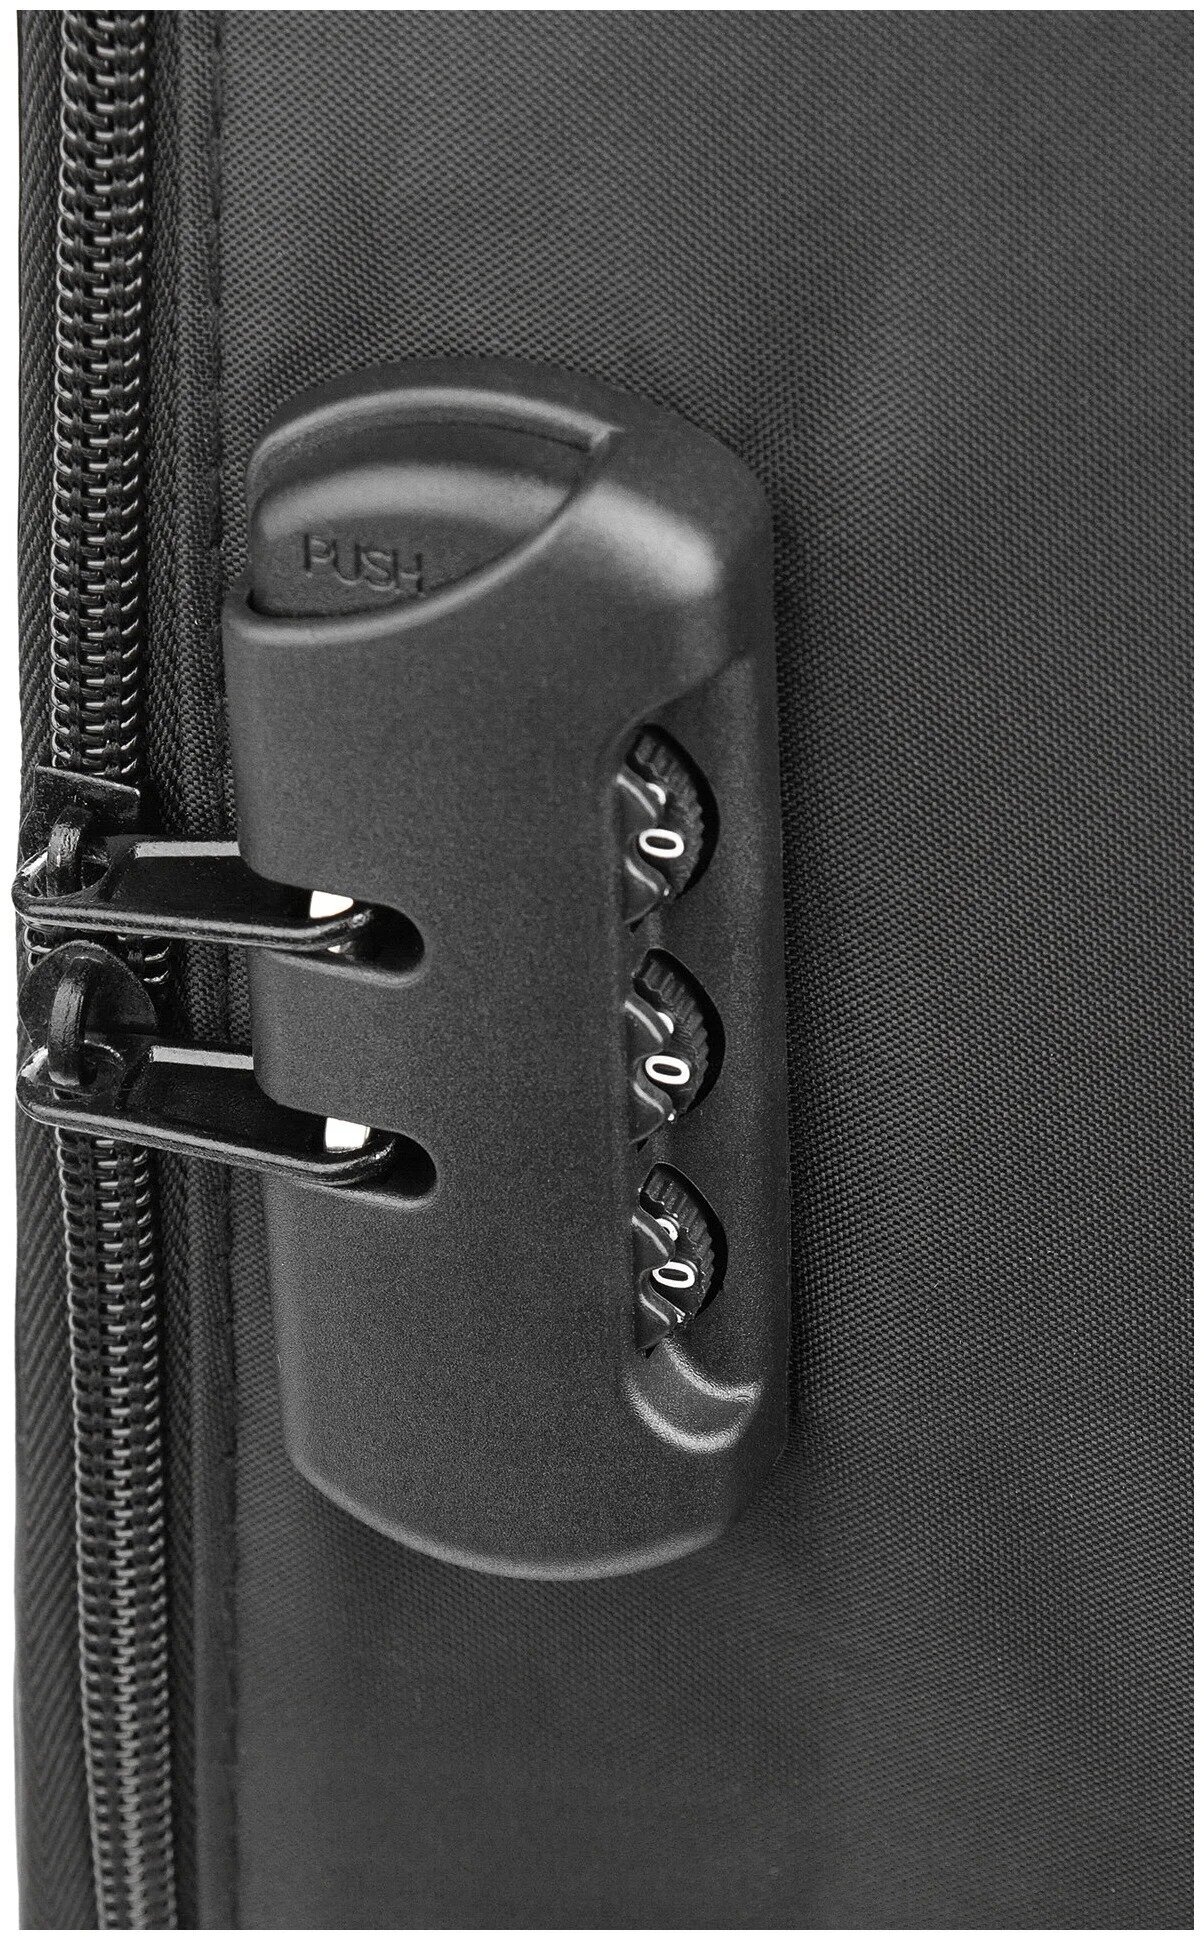 Органайзер для хранения документов с кодовым замком А4 дорожный папка сумка в поездку контейнер для вещей файлы кофр, цвет черный